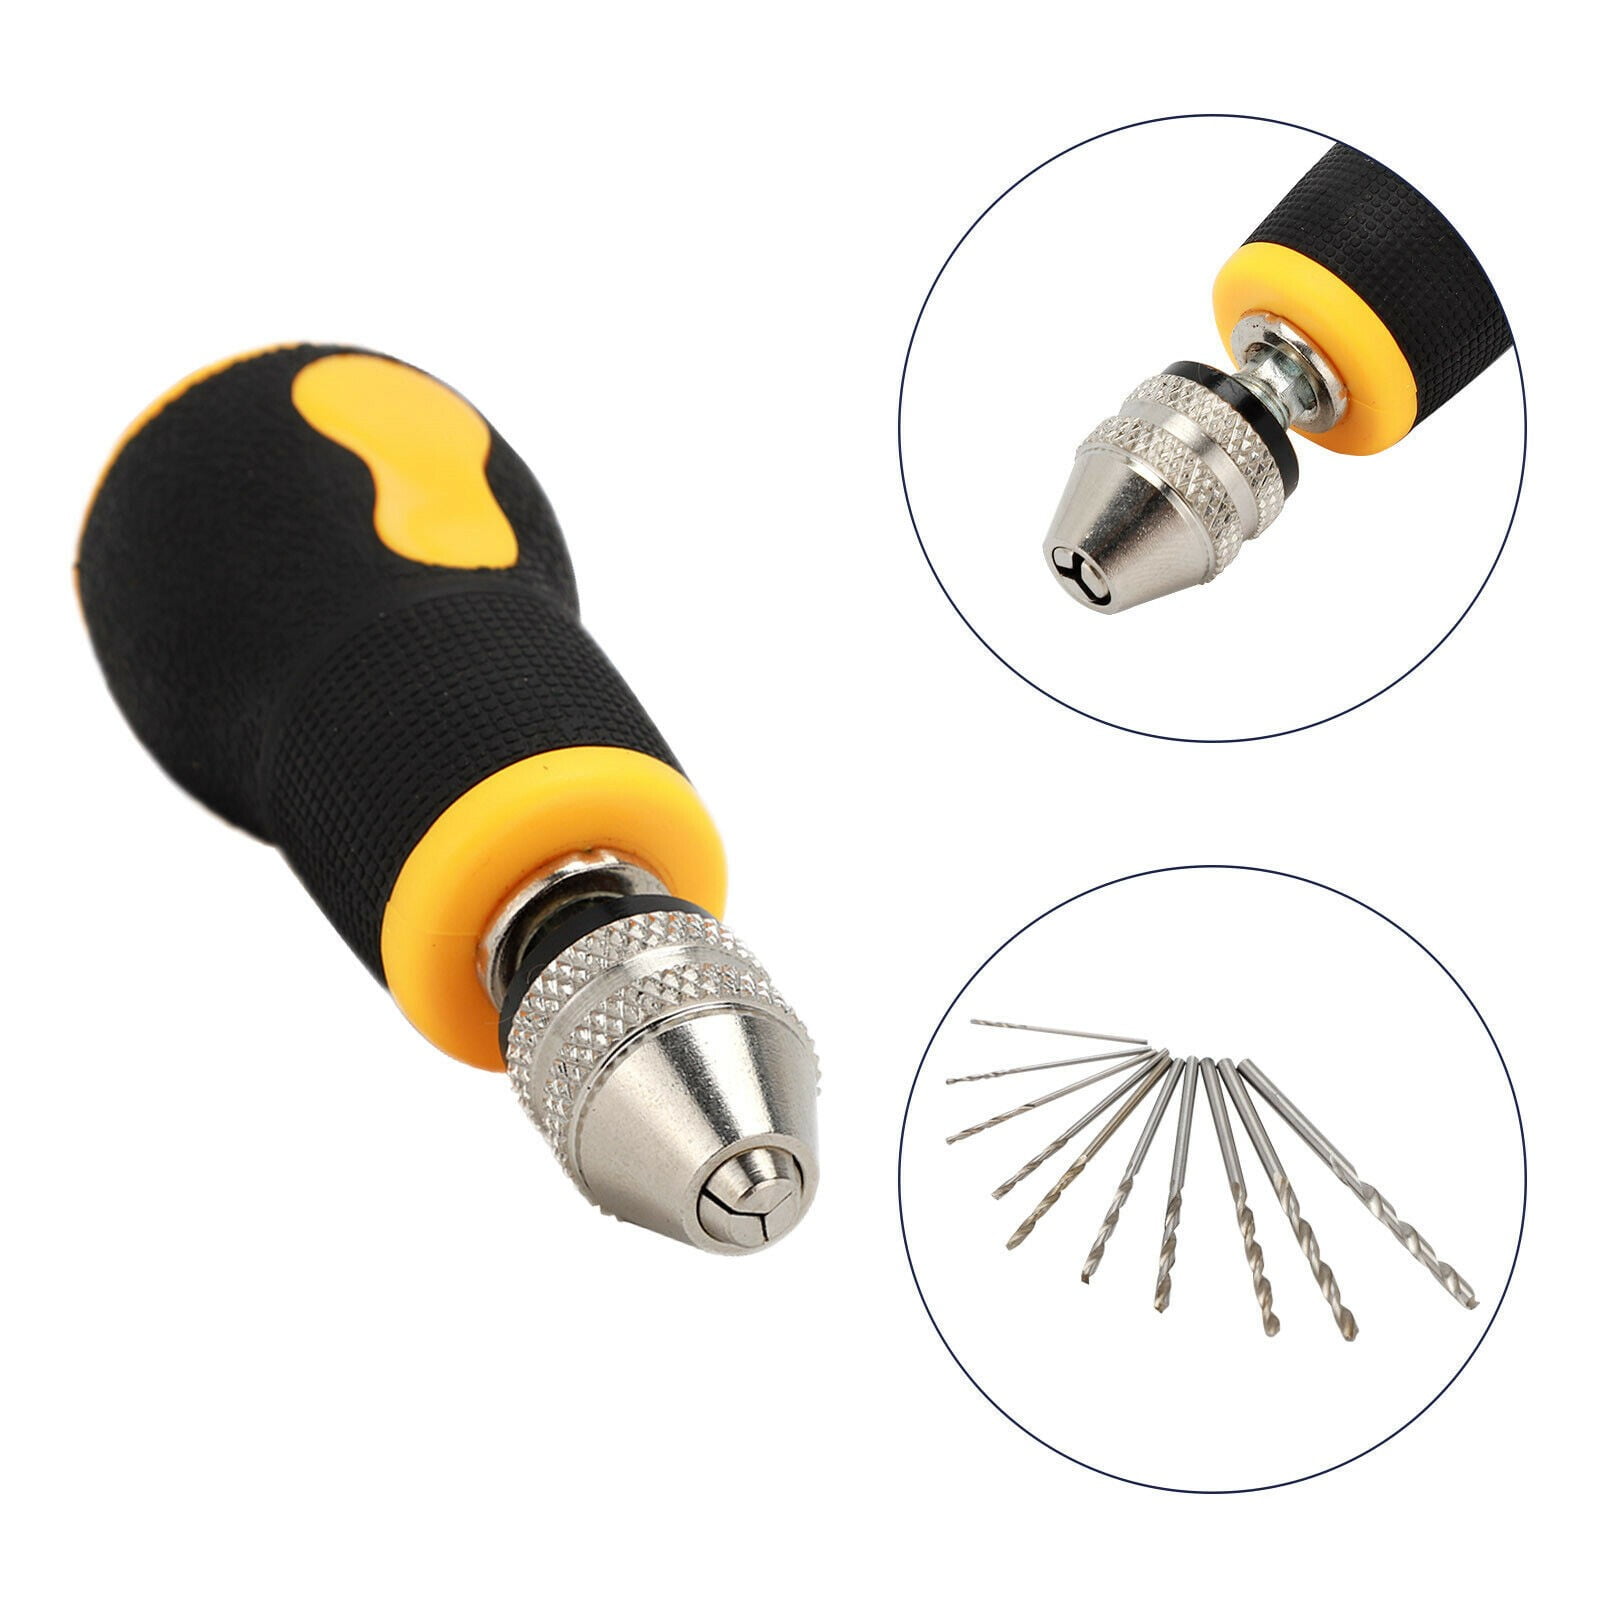 NIILEEL Micro Mini Portable Small Hand Drill + 10pcs Drill Bits Set Tool  0.8-3.0mm 